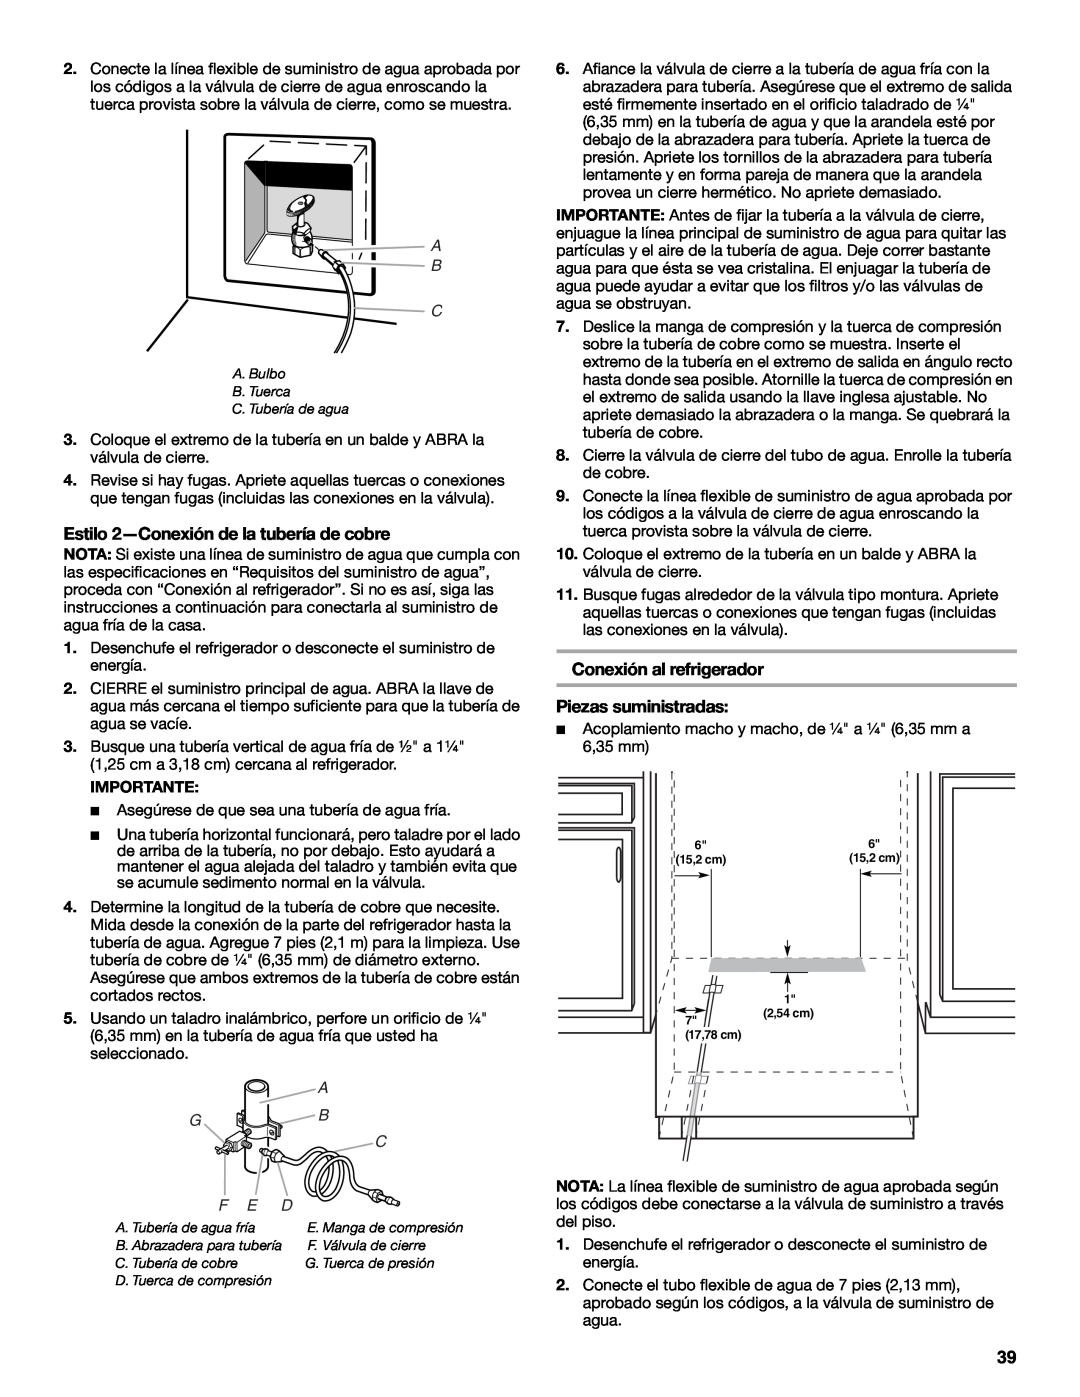 Jenn-Air W10379136B manual Estilo 2-Conexiónde la tubería de cobre, Piezas suministradas, A B C, F E D 